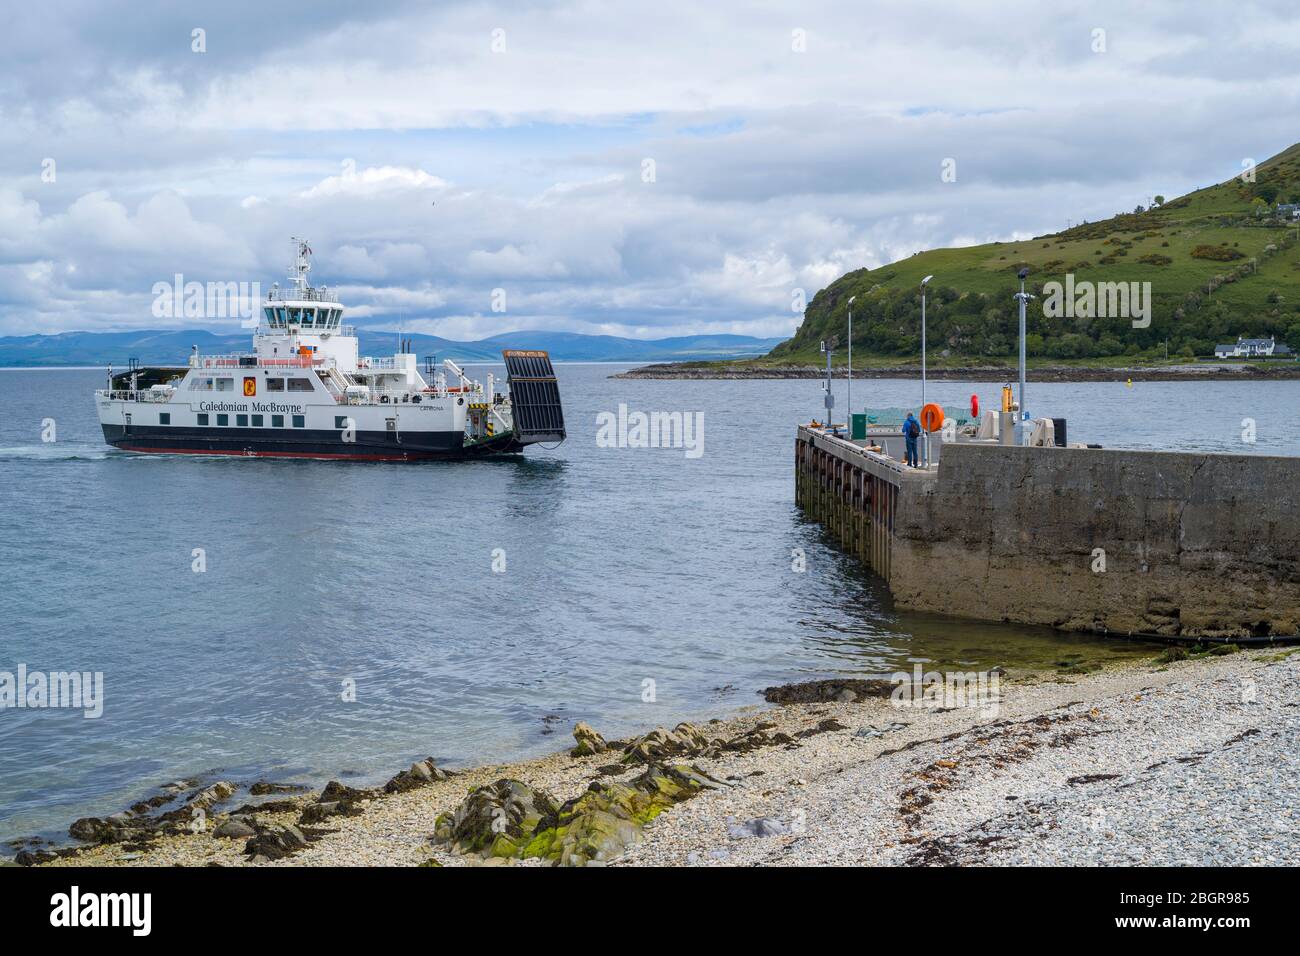 Ferry de coche de Calmac - ferries de vehículos Caldeonian MacBrayne - llegando al puerto de ferry de Lochranza, Isla de Arran, Escocia Foto de stock